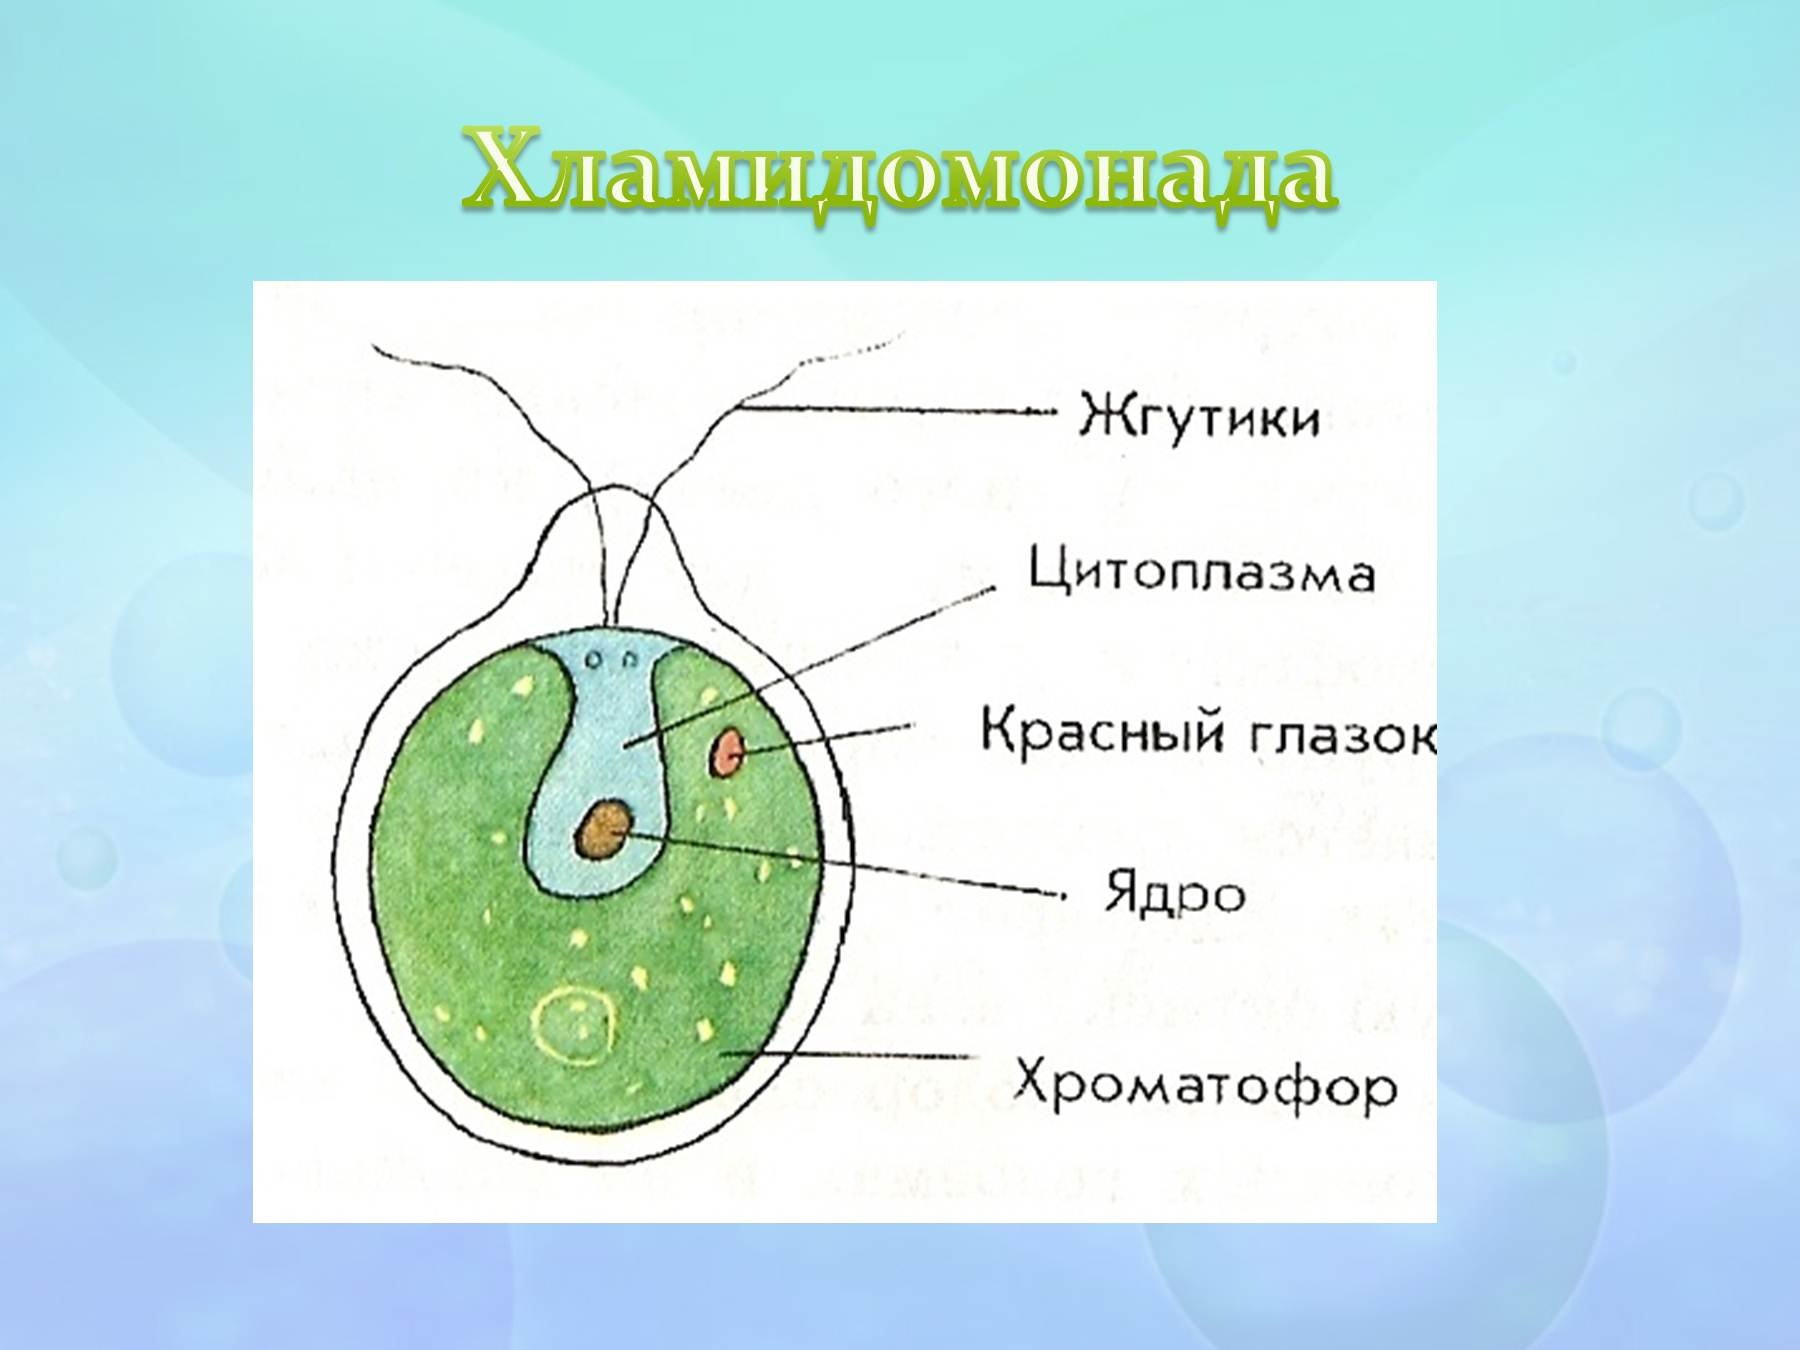 Известно что хламидомонада одноклеточная фотосинтезирующая зеленая водоросль. Строение водоросли хламидомонады. Строение одноклеточной водоросли хламидомонады. Хламидомонада 5 класс биология. Хроматофор у хламидомонады.